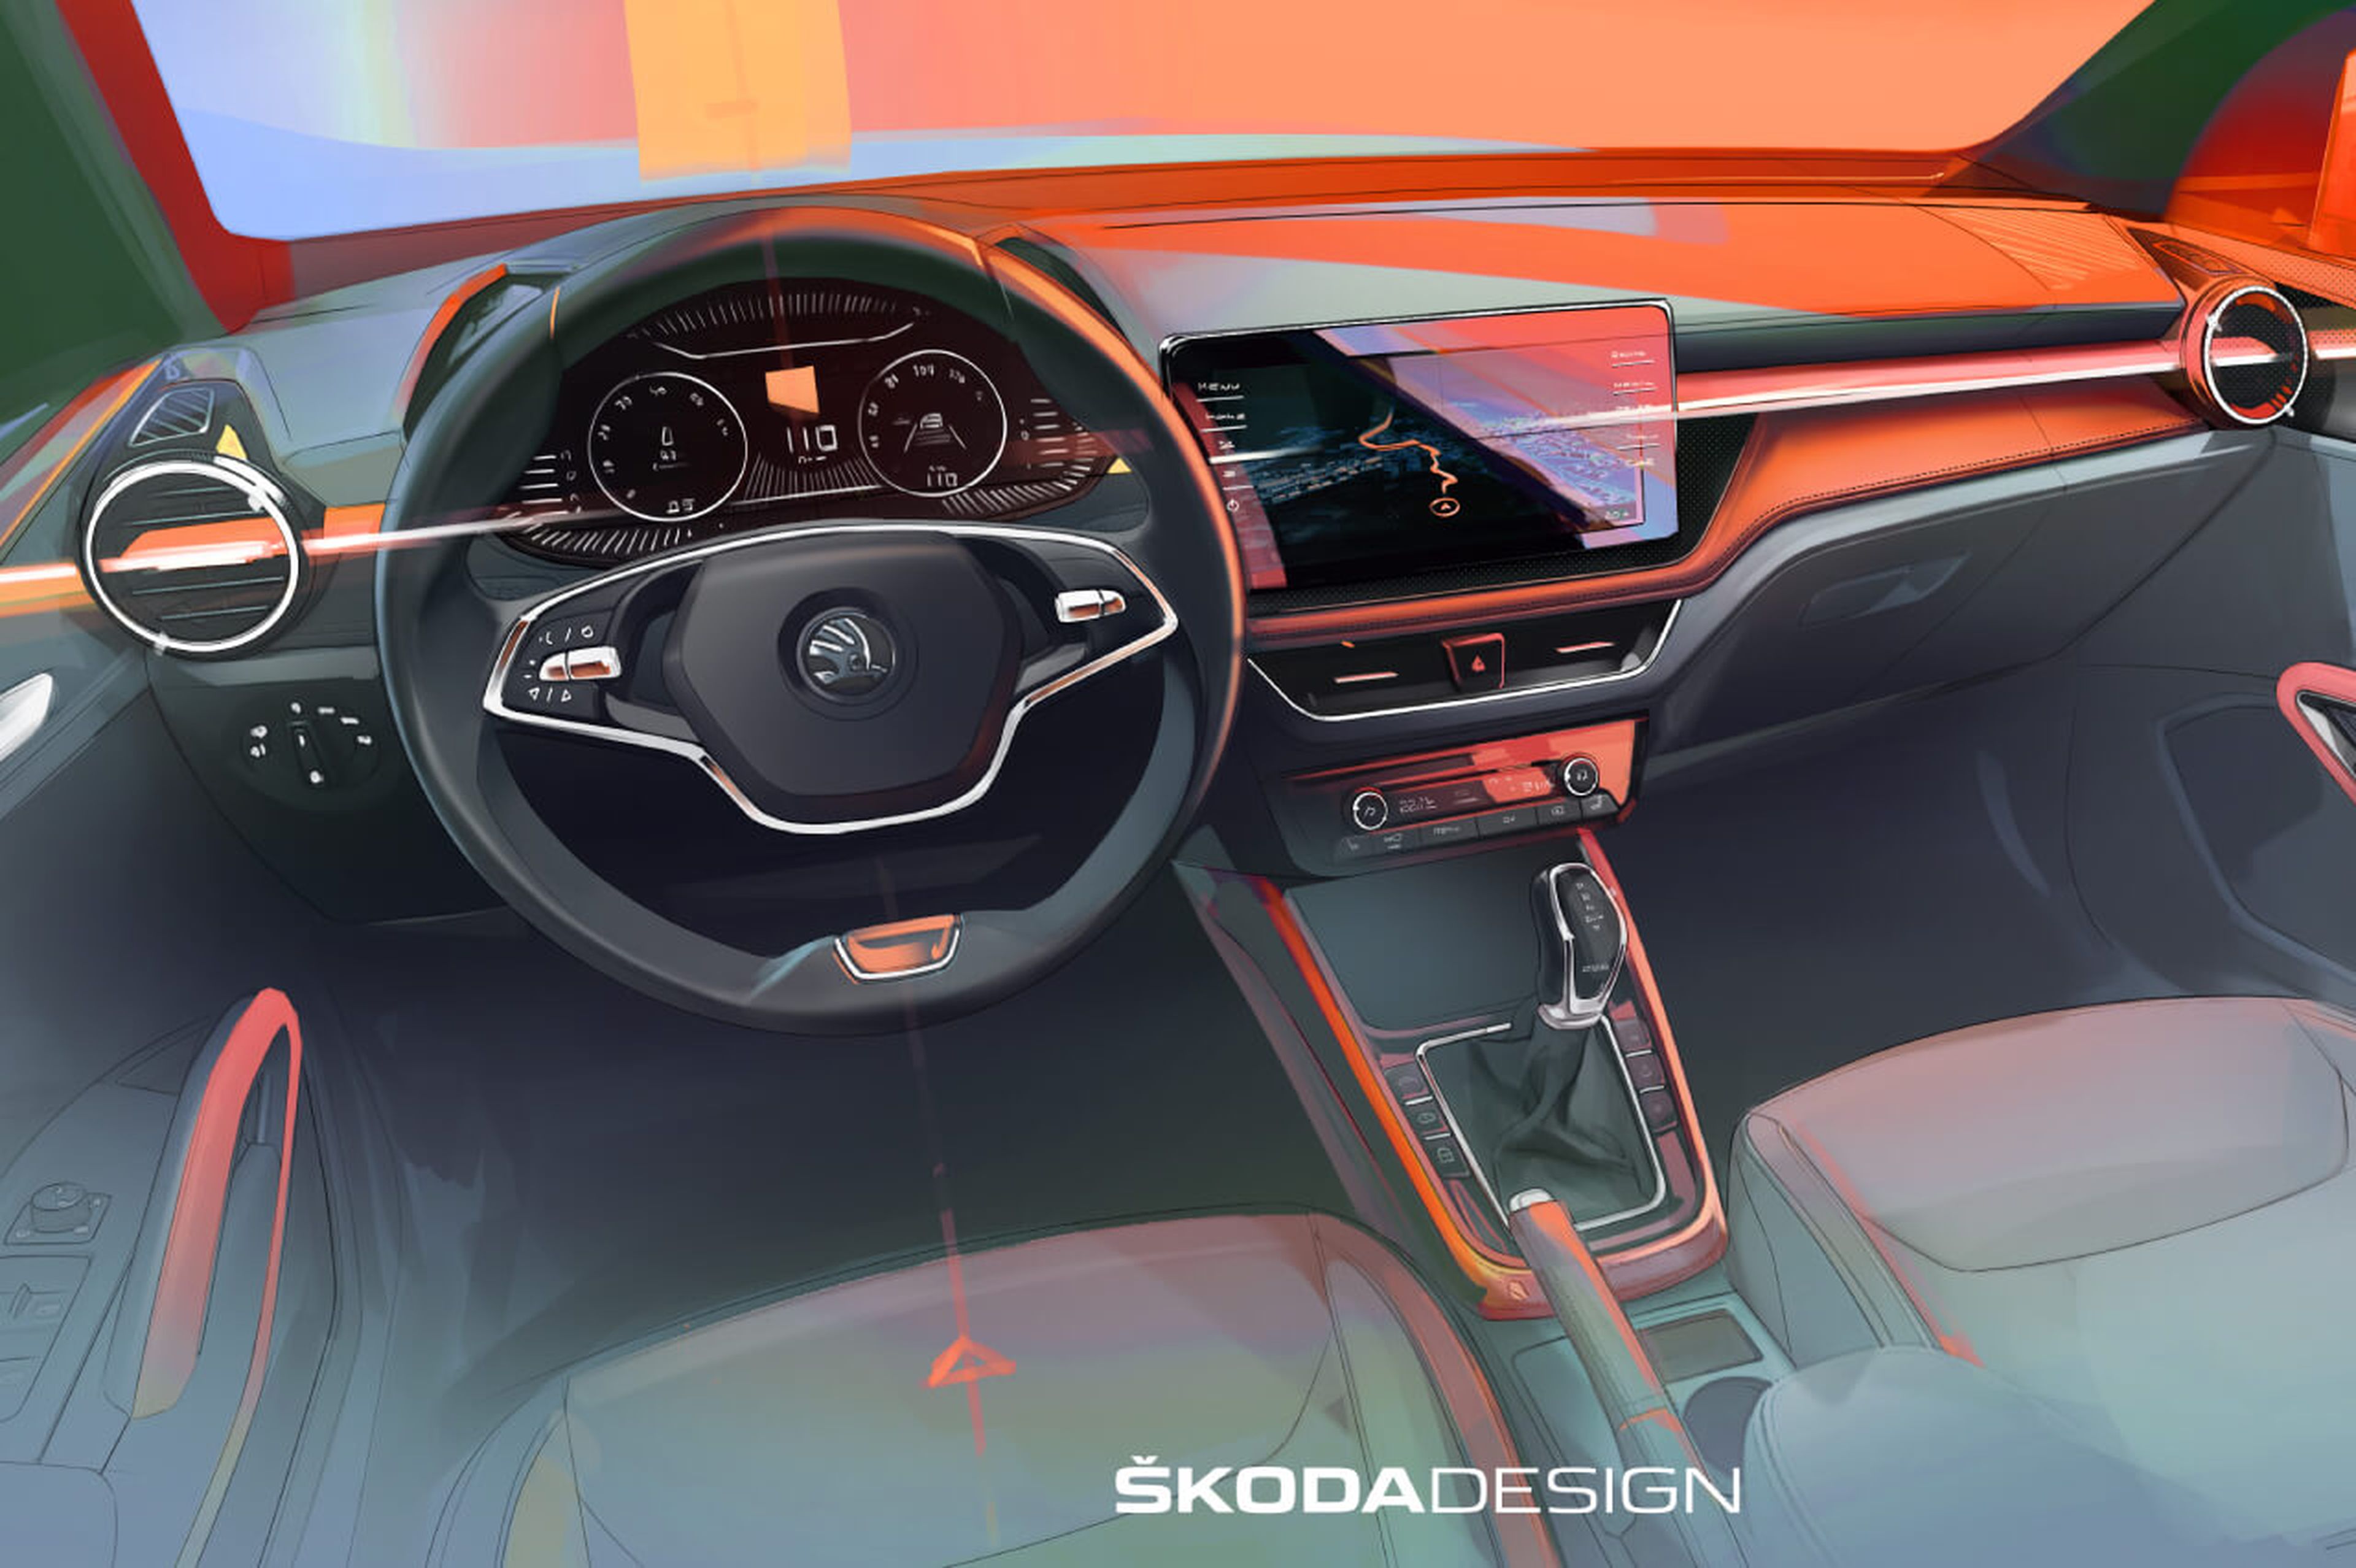 Škoda Fabia 2021, ya tenemos las primeras imágenes de su interior